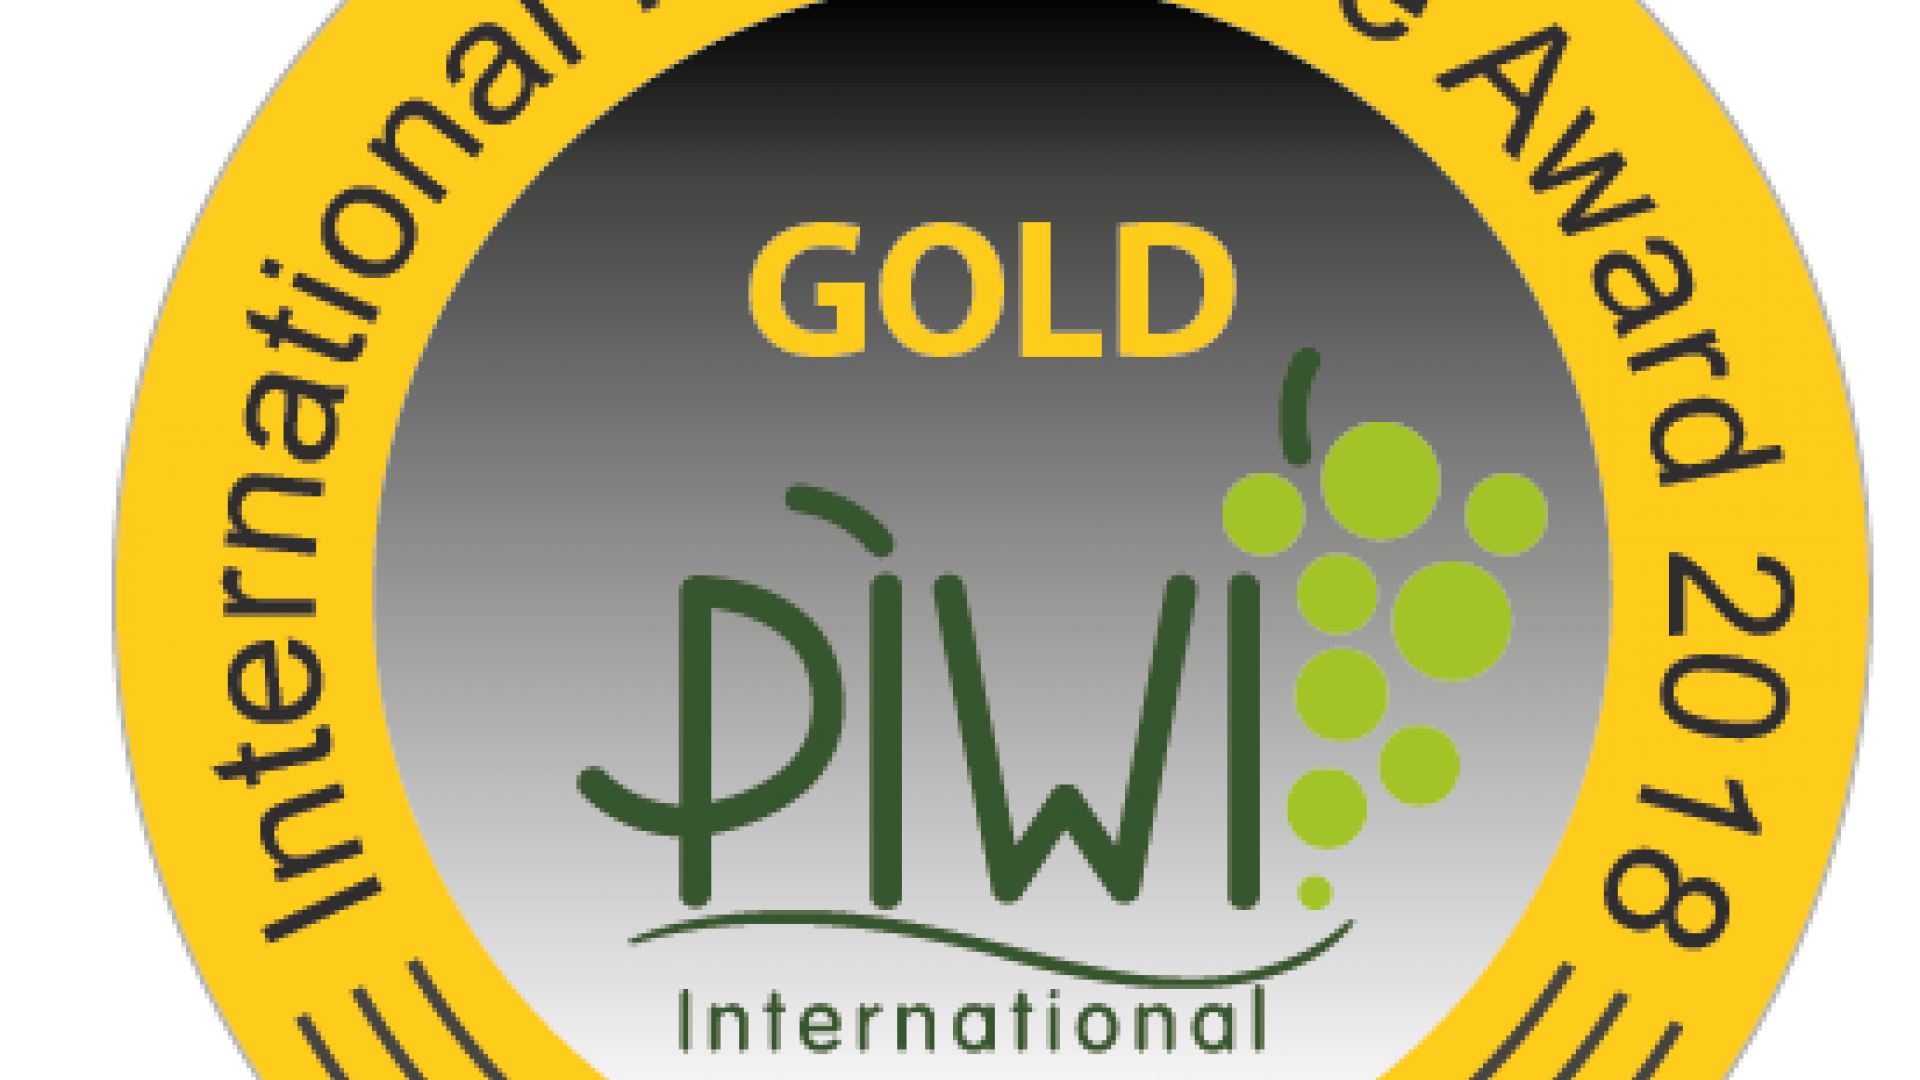 2018 EN-Gold-PIWI